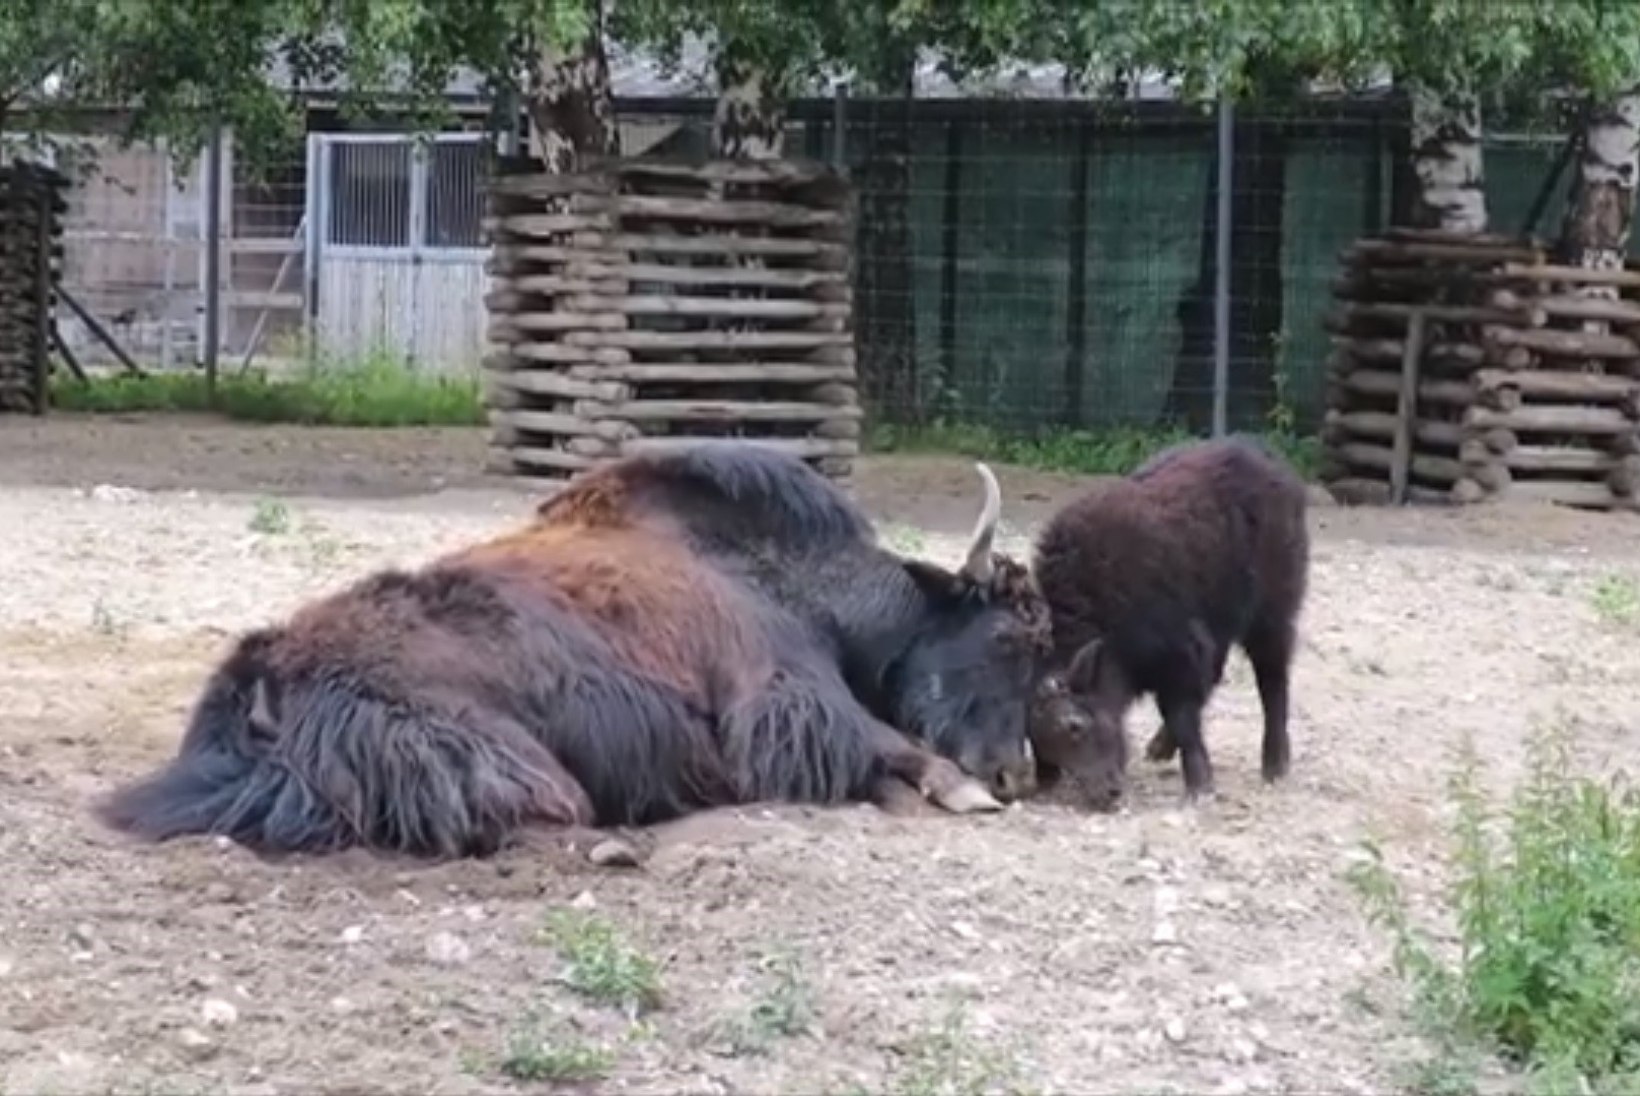 VIDEO | Vaata, kuidas äsja sündinud jakivasikas kepsutab Tallinna loomaaias!